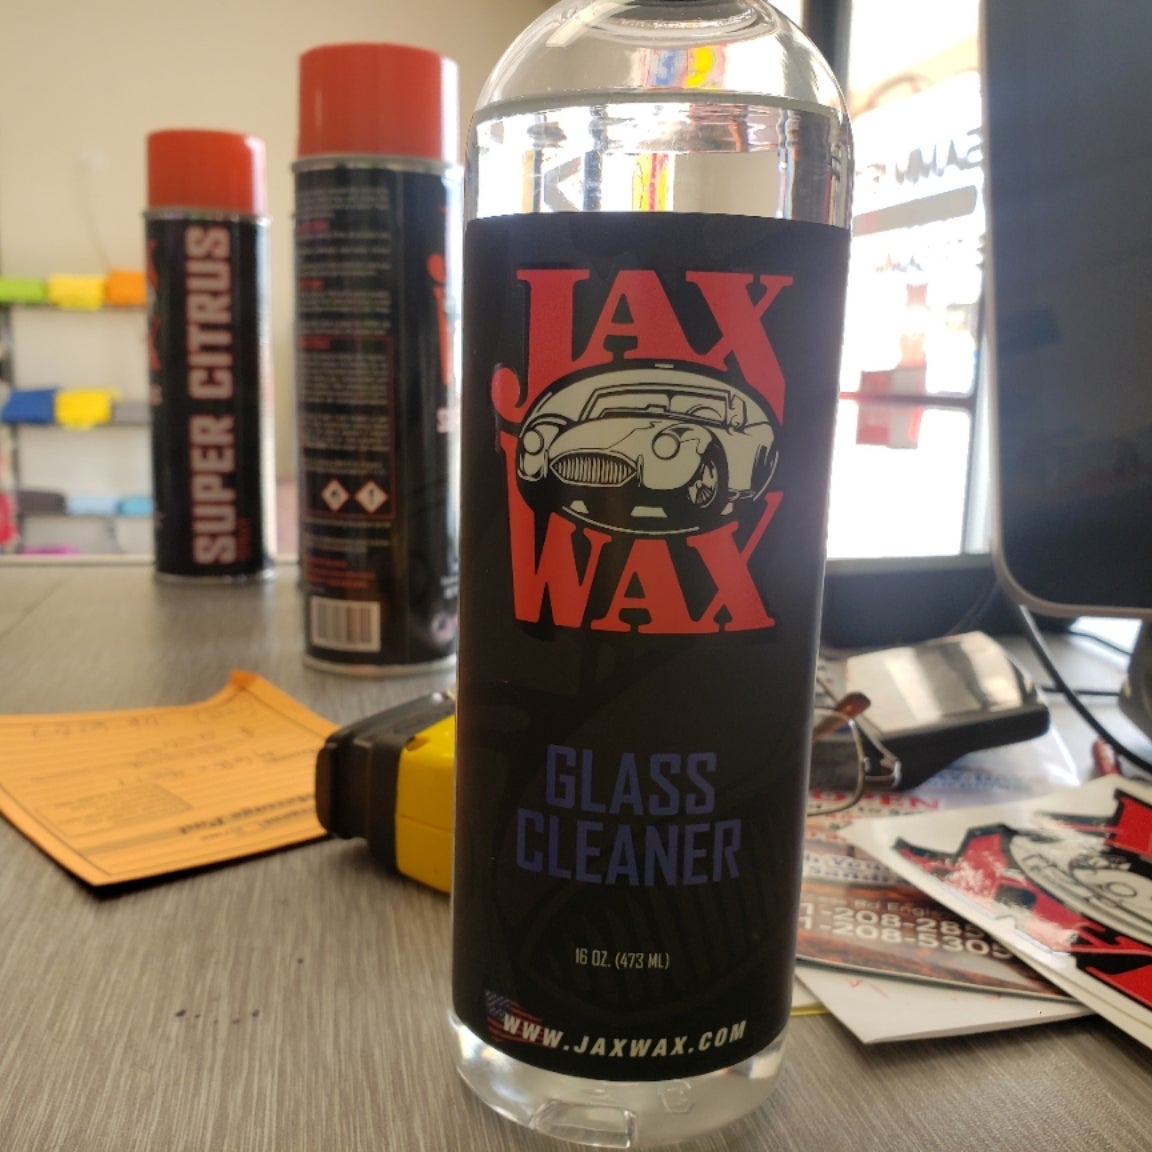 Jax Wax Velour cleaner